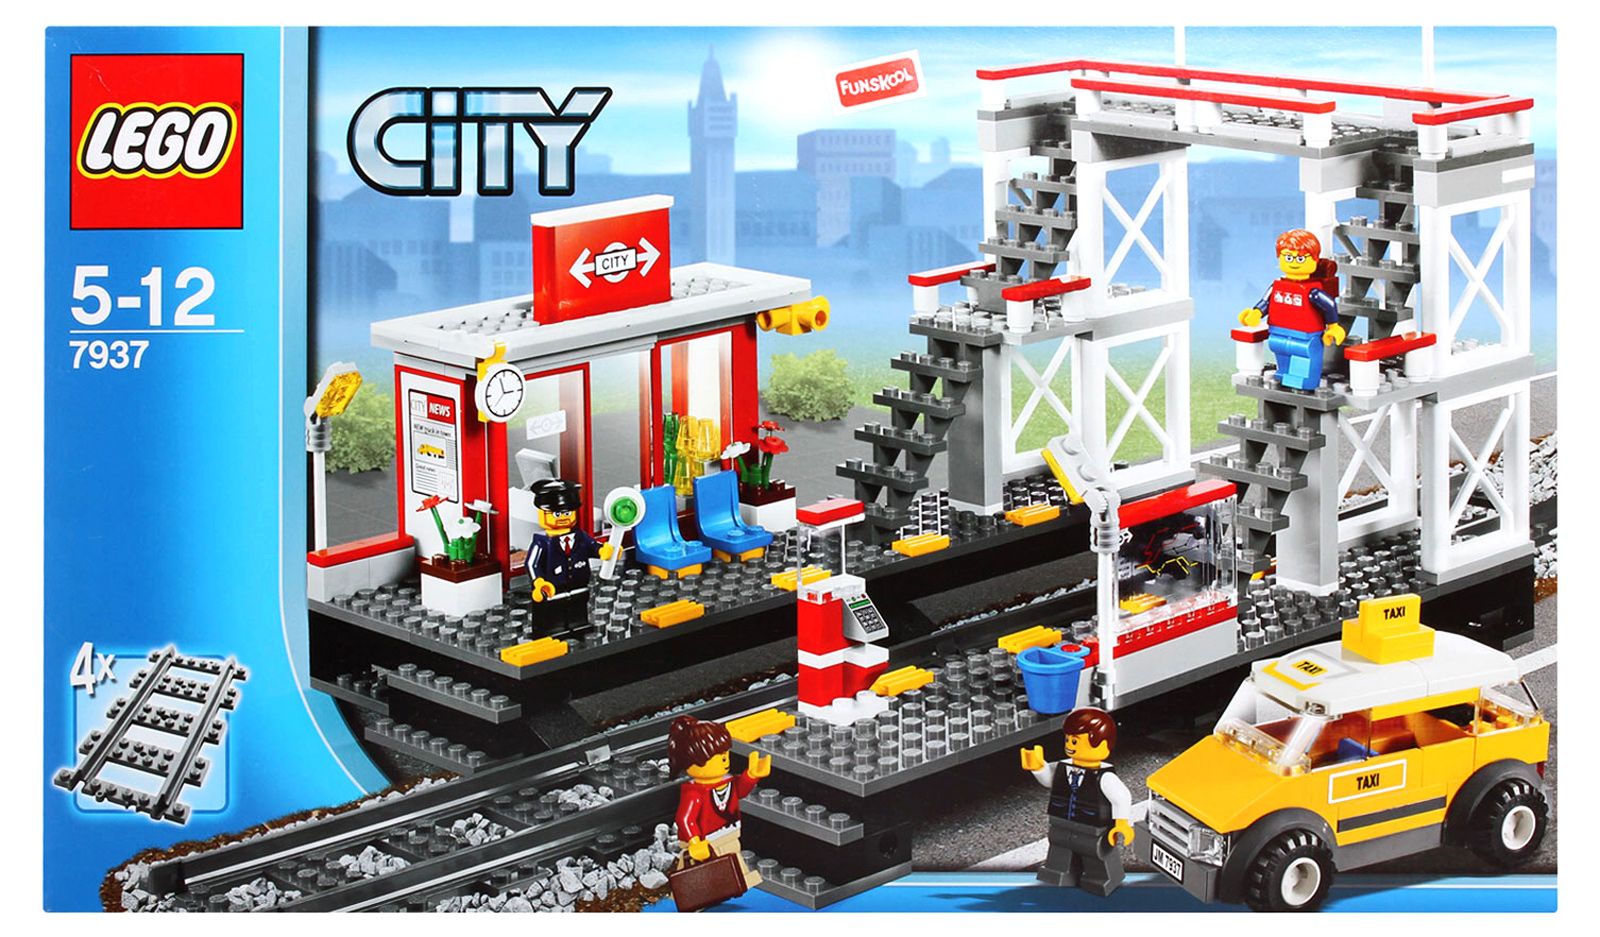 Lego Superman Sets